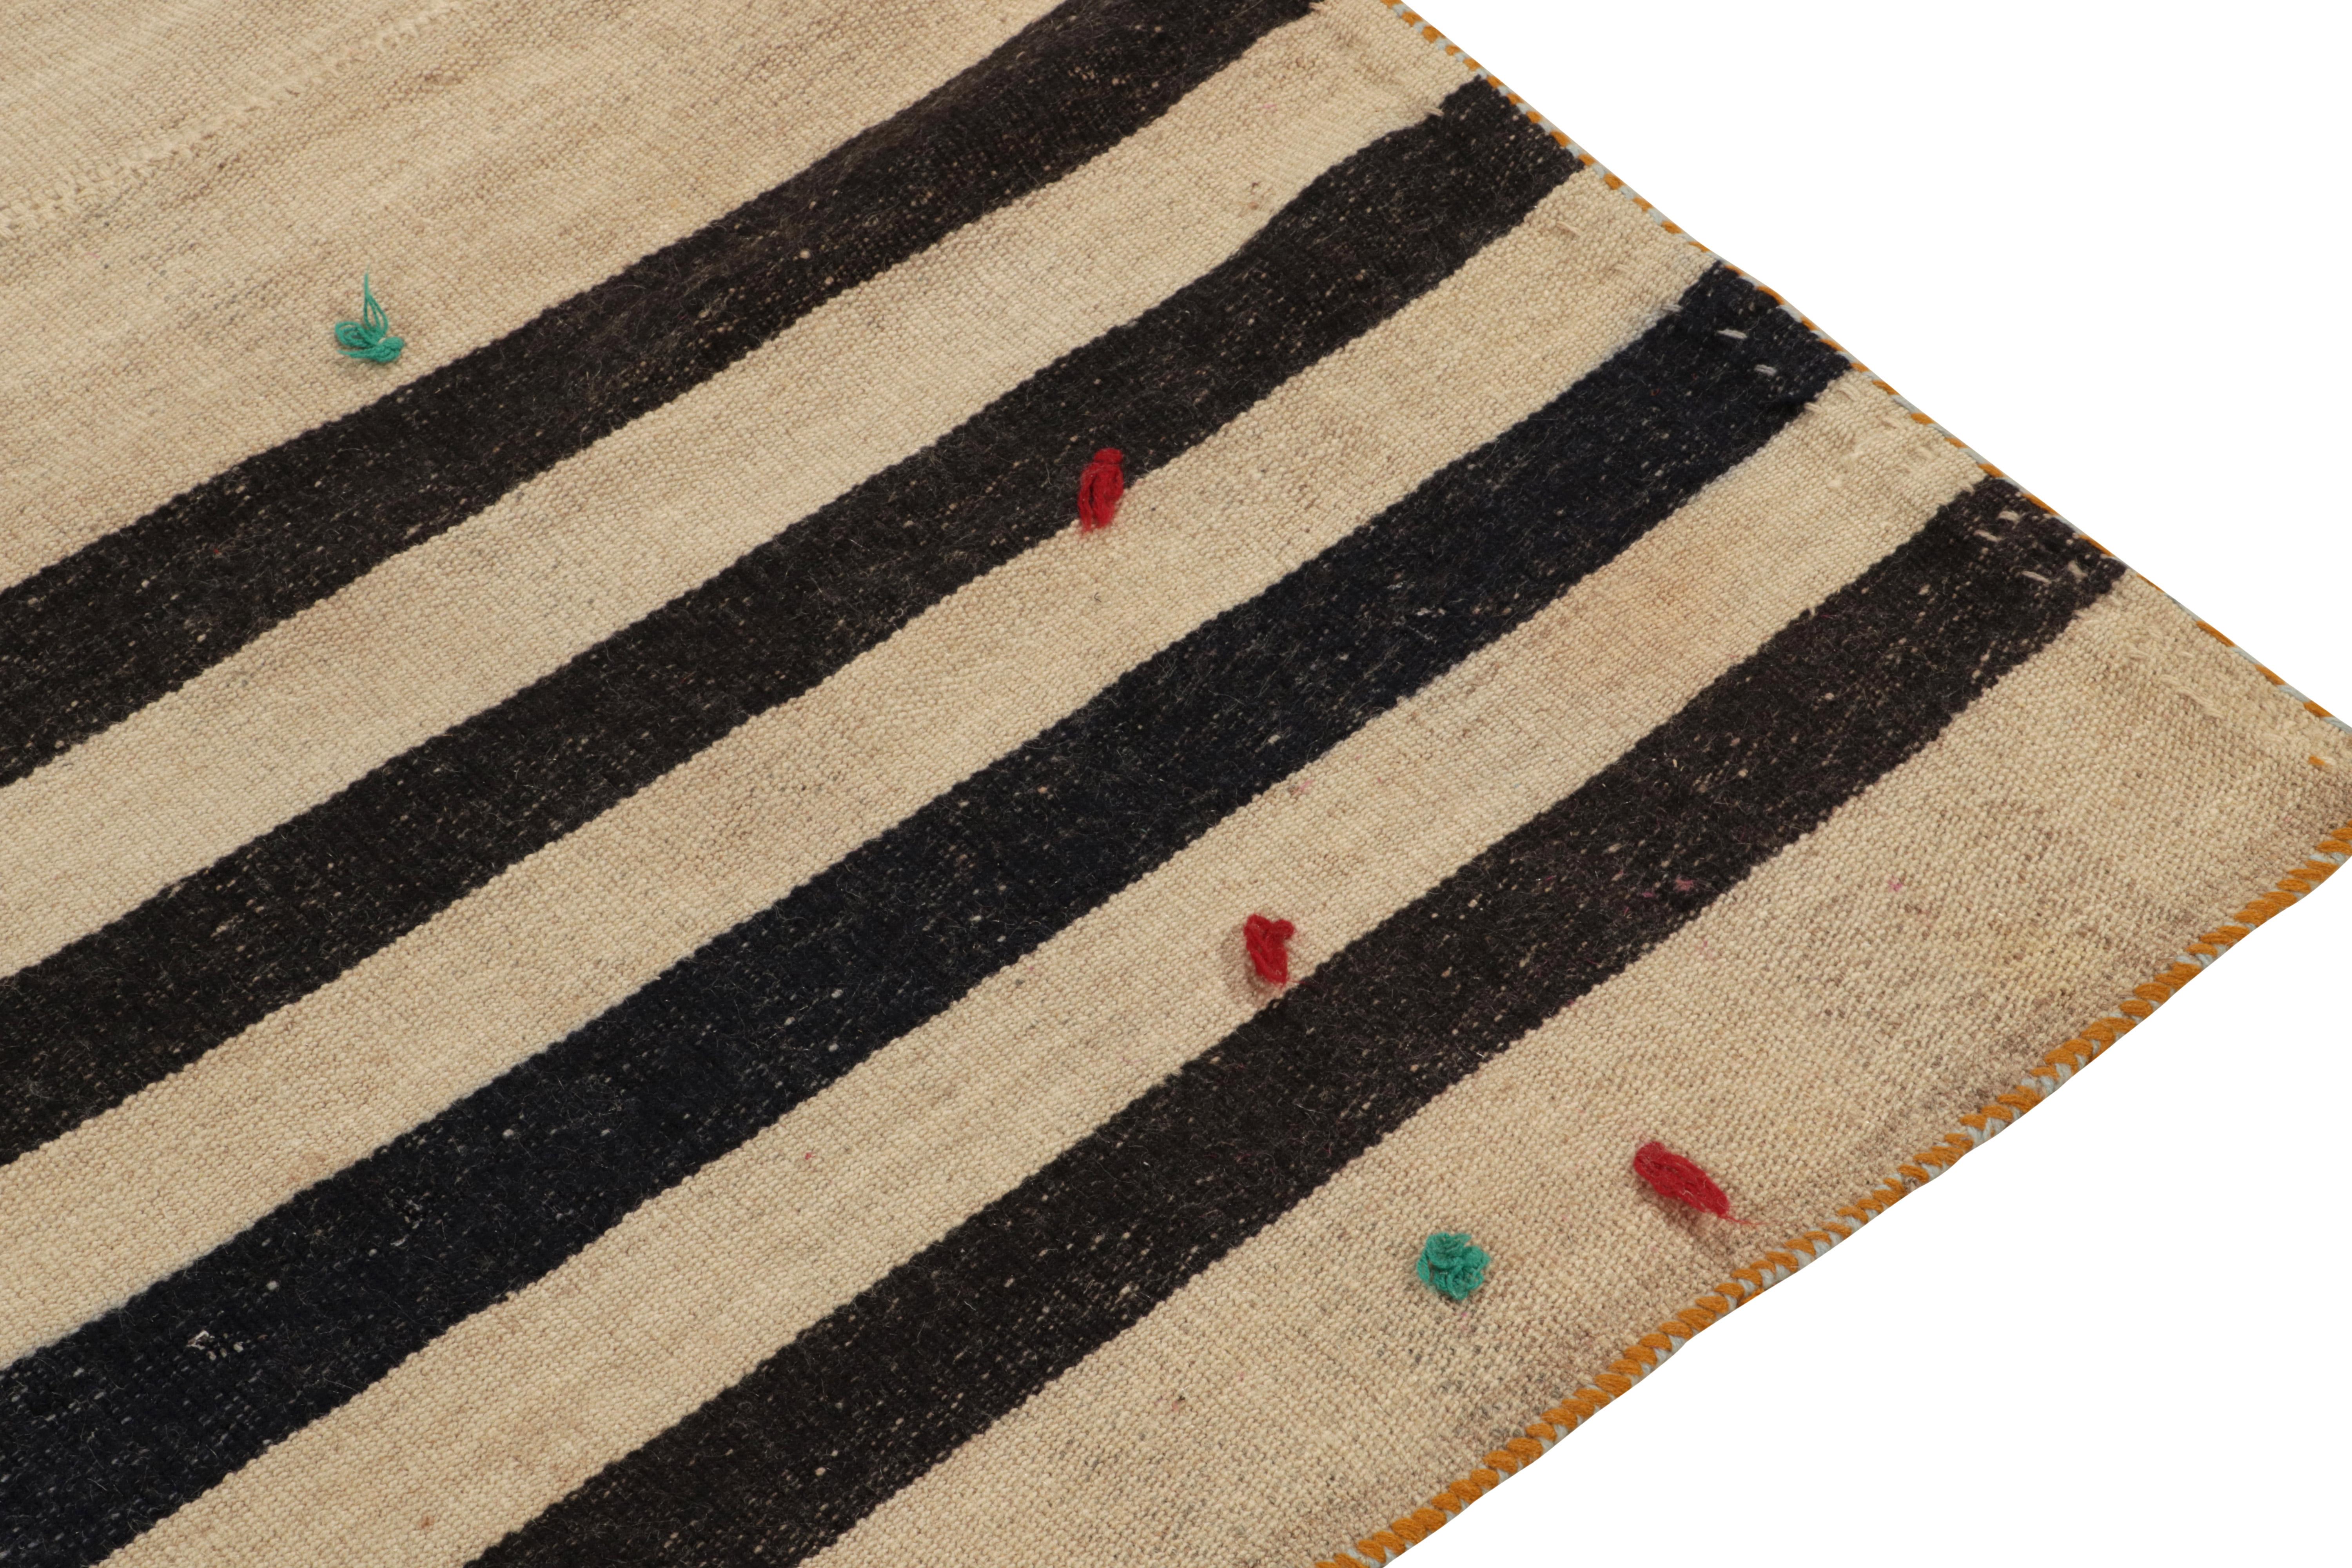 Mid-20th Century Vintage Turkish Kilim Rug in Beige-Brown & Black Stripe Pattern by Rug & Kilim For Sale